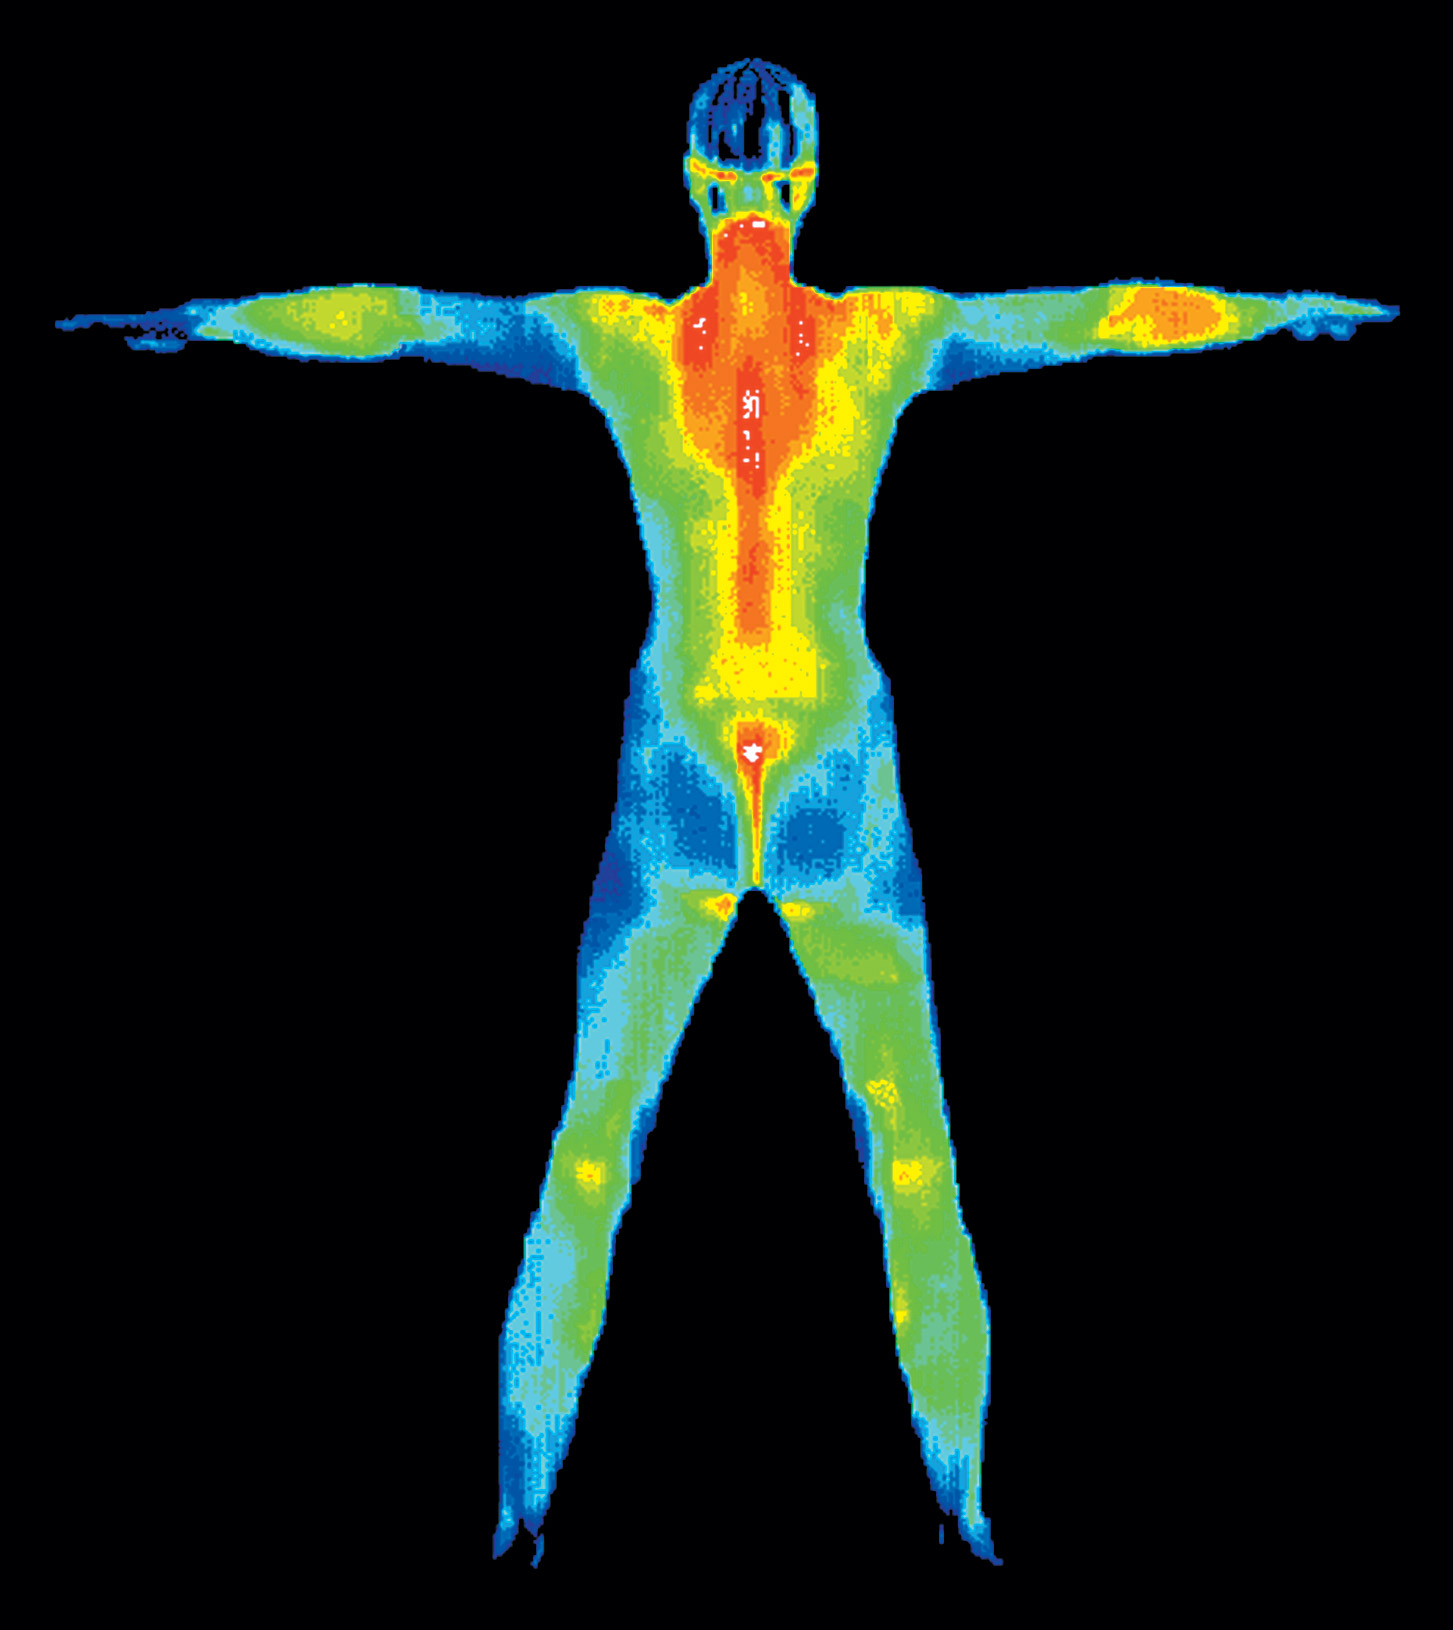 Thermal Imaging